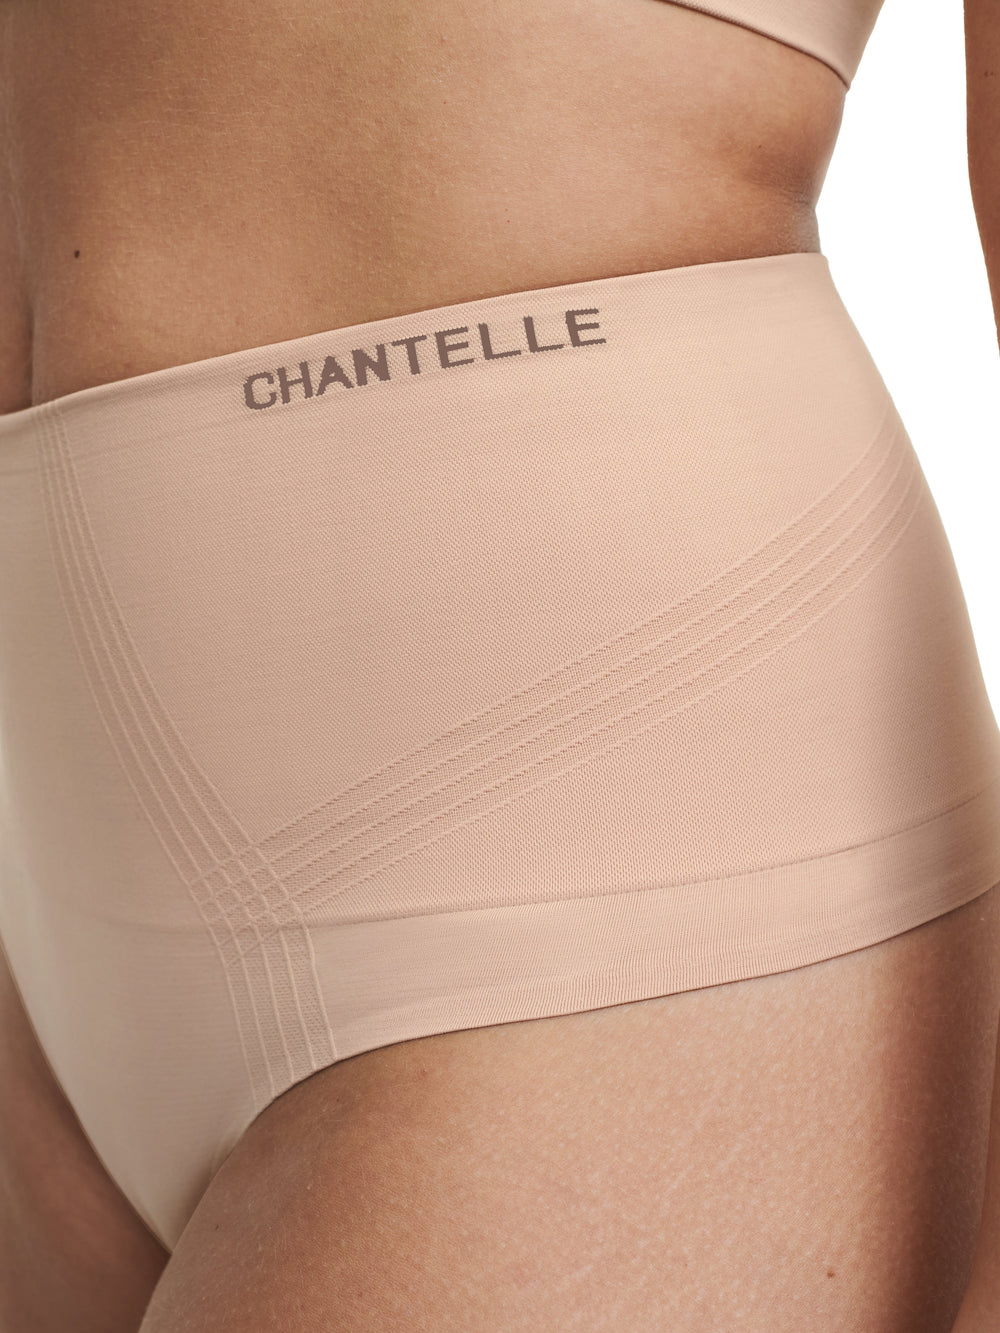 Chantelle 光滑舒适塑形高腰丁字裤 - Sirocco 丁字裤 Chantelle